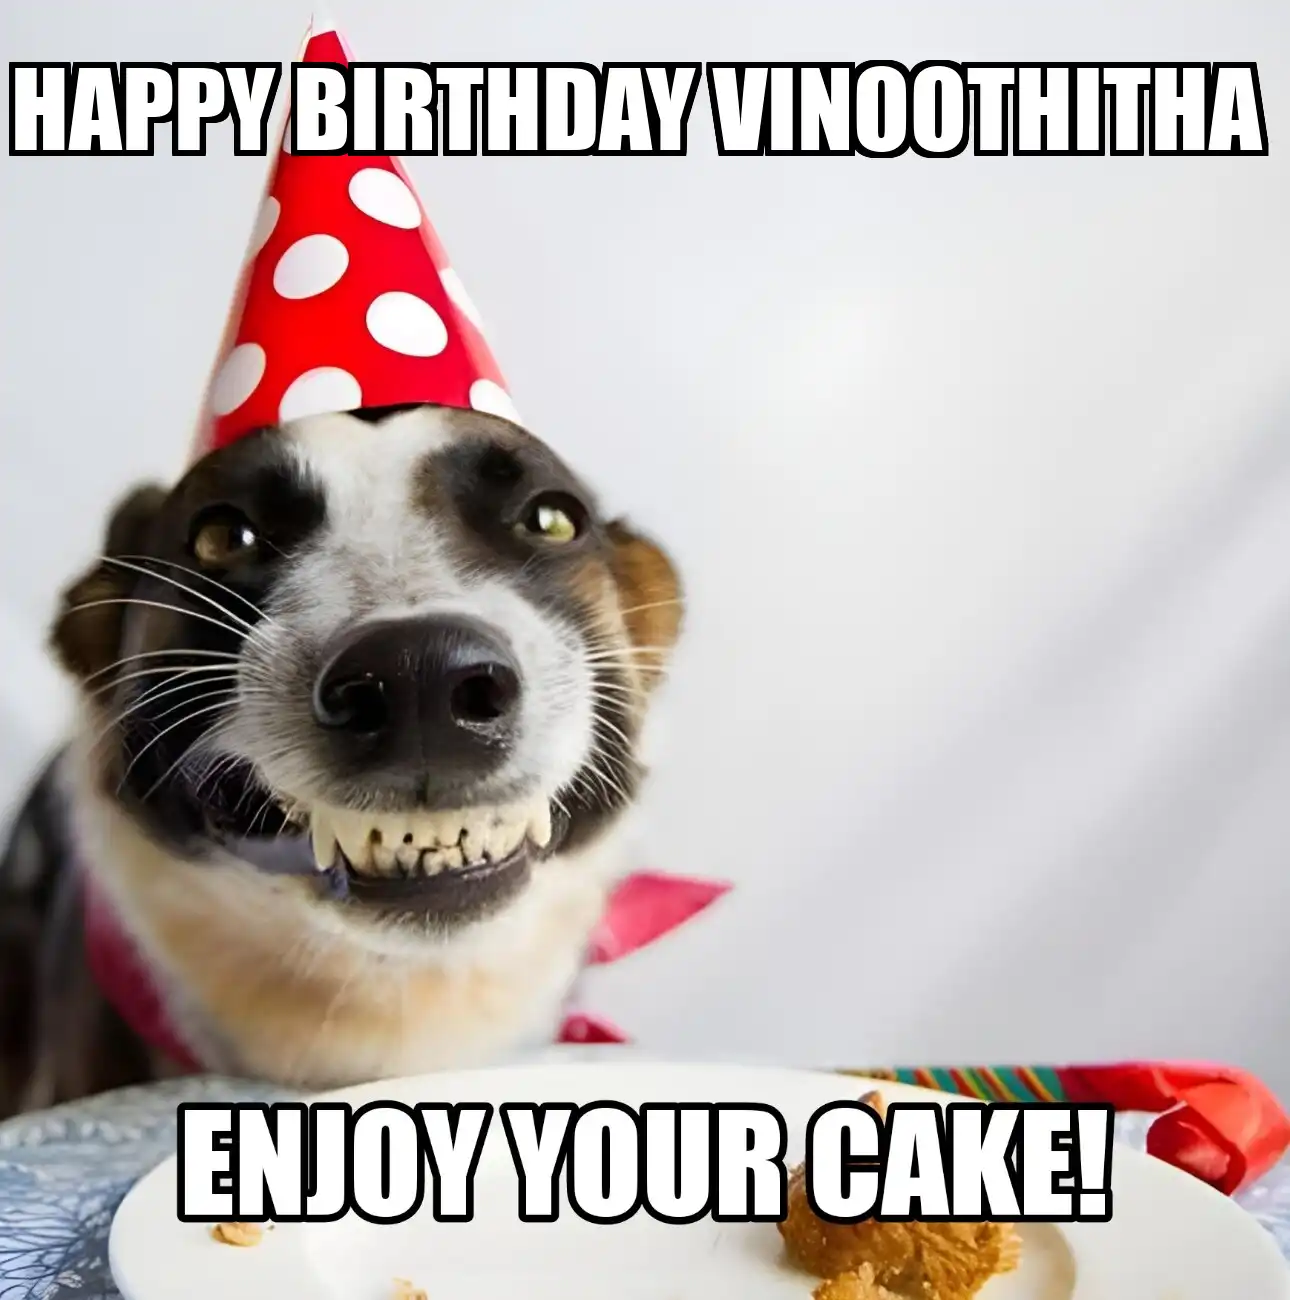 Happy Birthday Vinoothitha Enjoy Your Cake Dog Meme